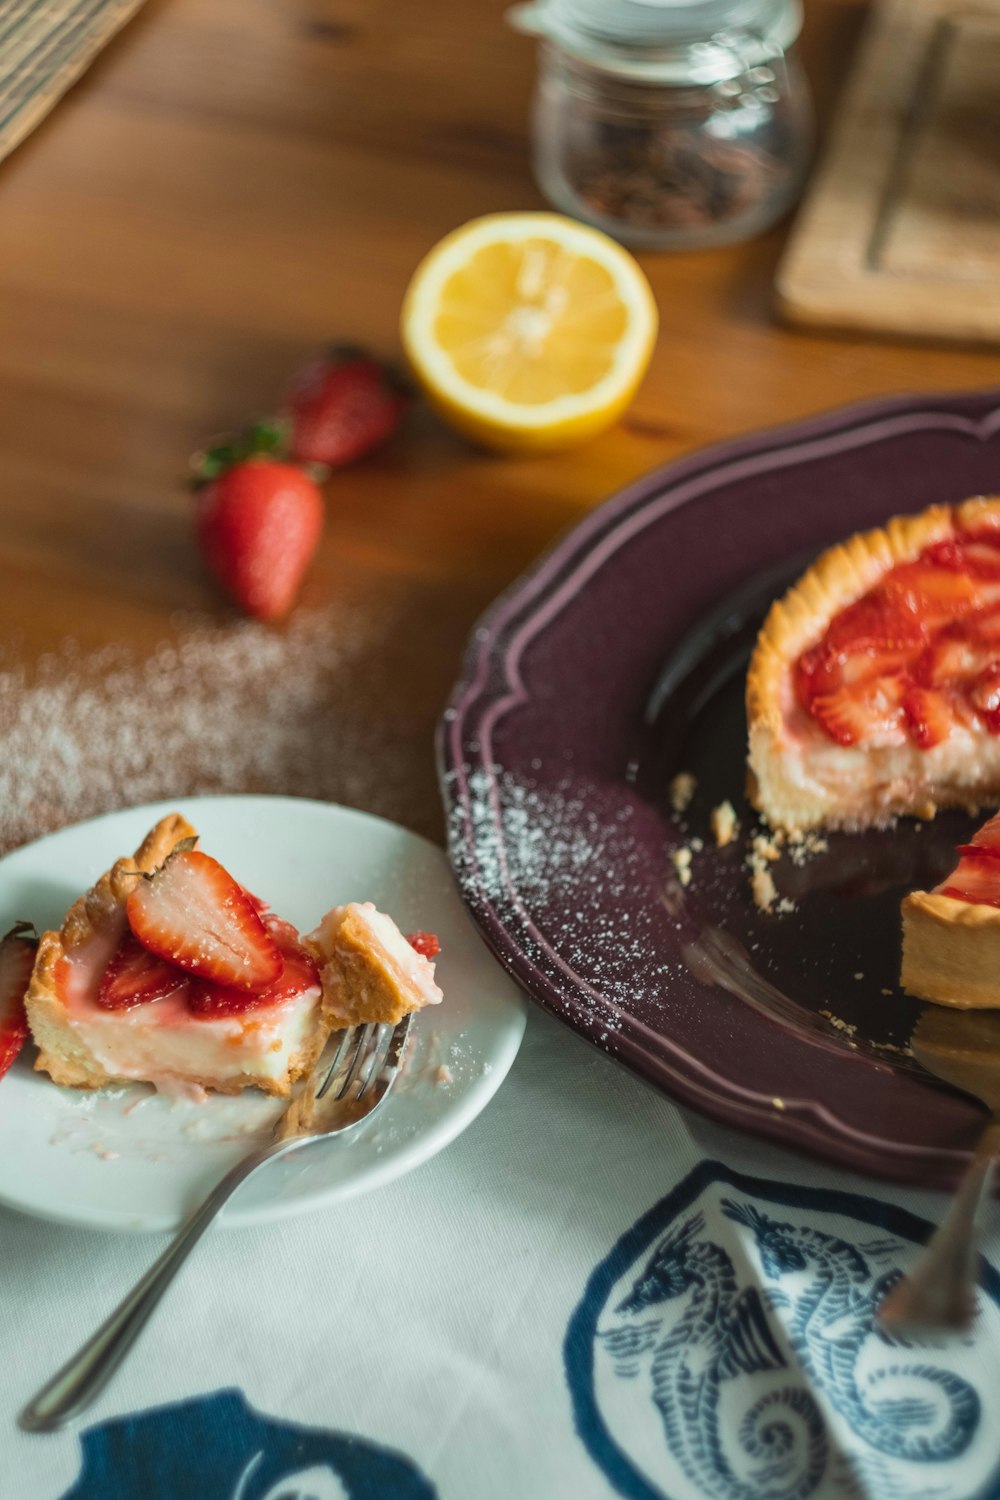 Tranche de tarte aux fraises sur une soucoupe à côté de l’assiette avec tarte